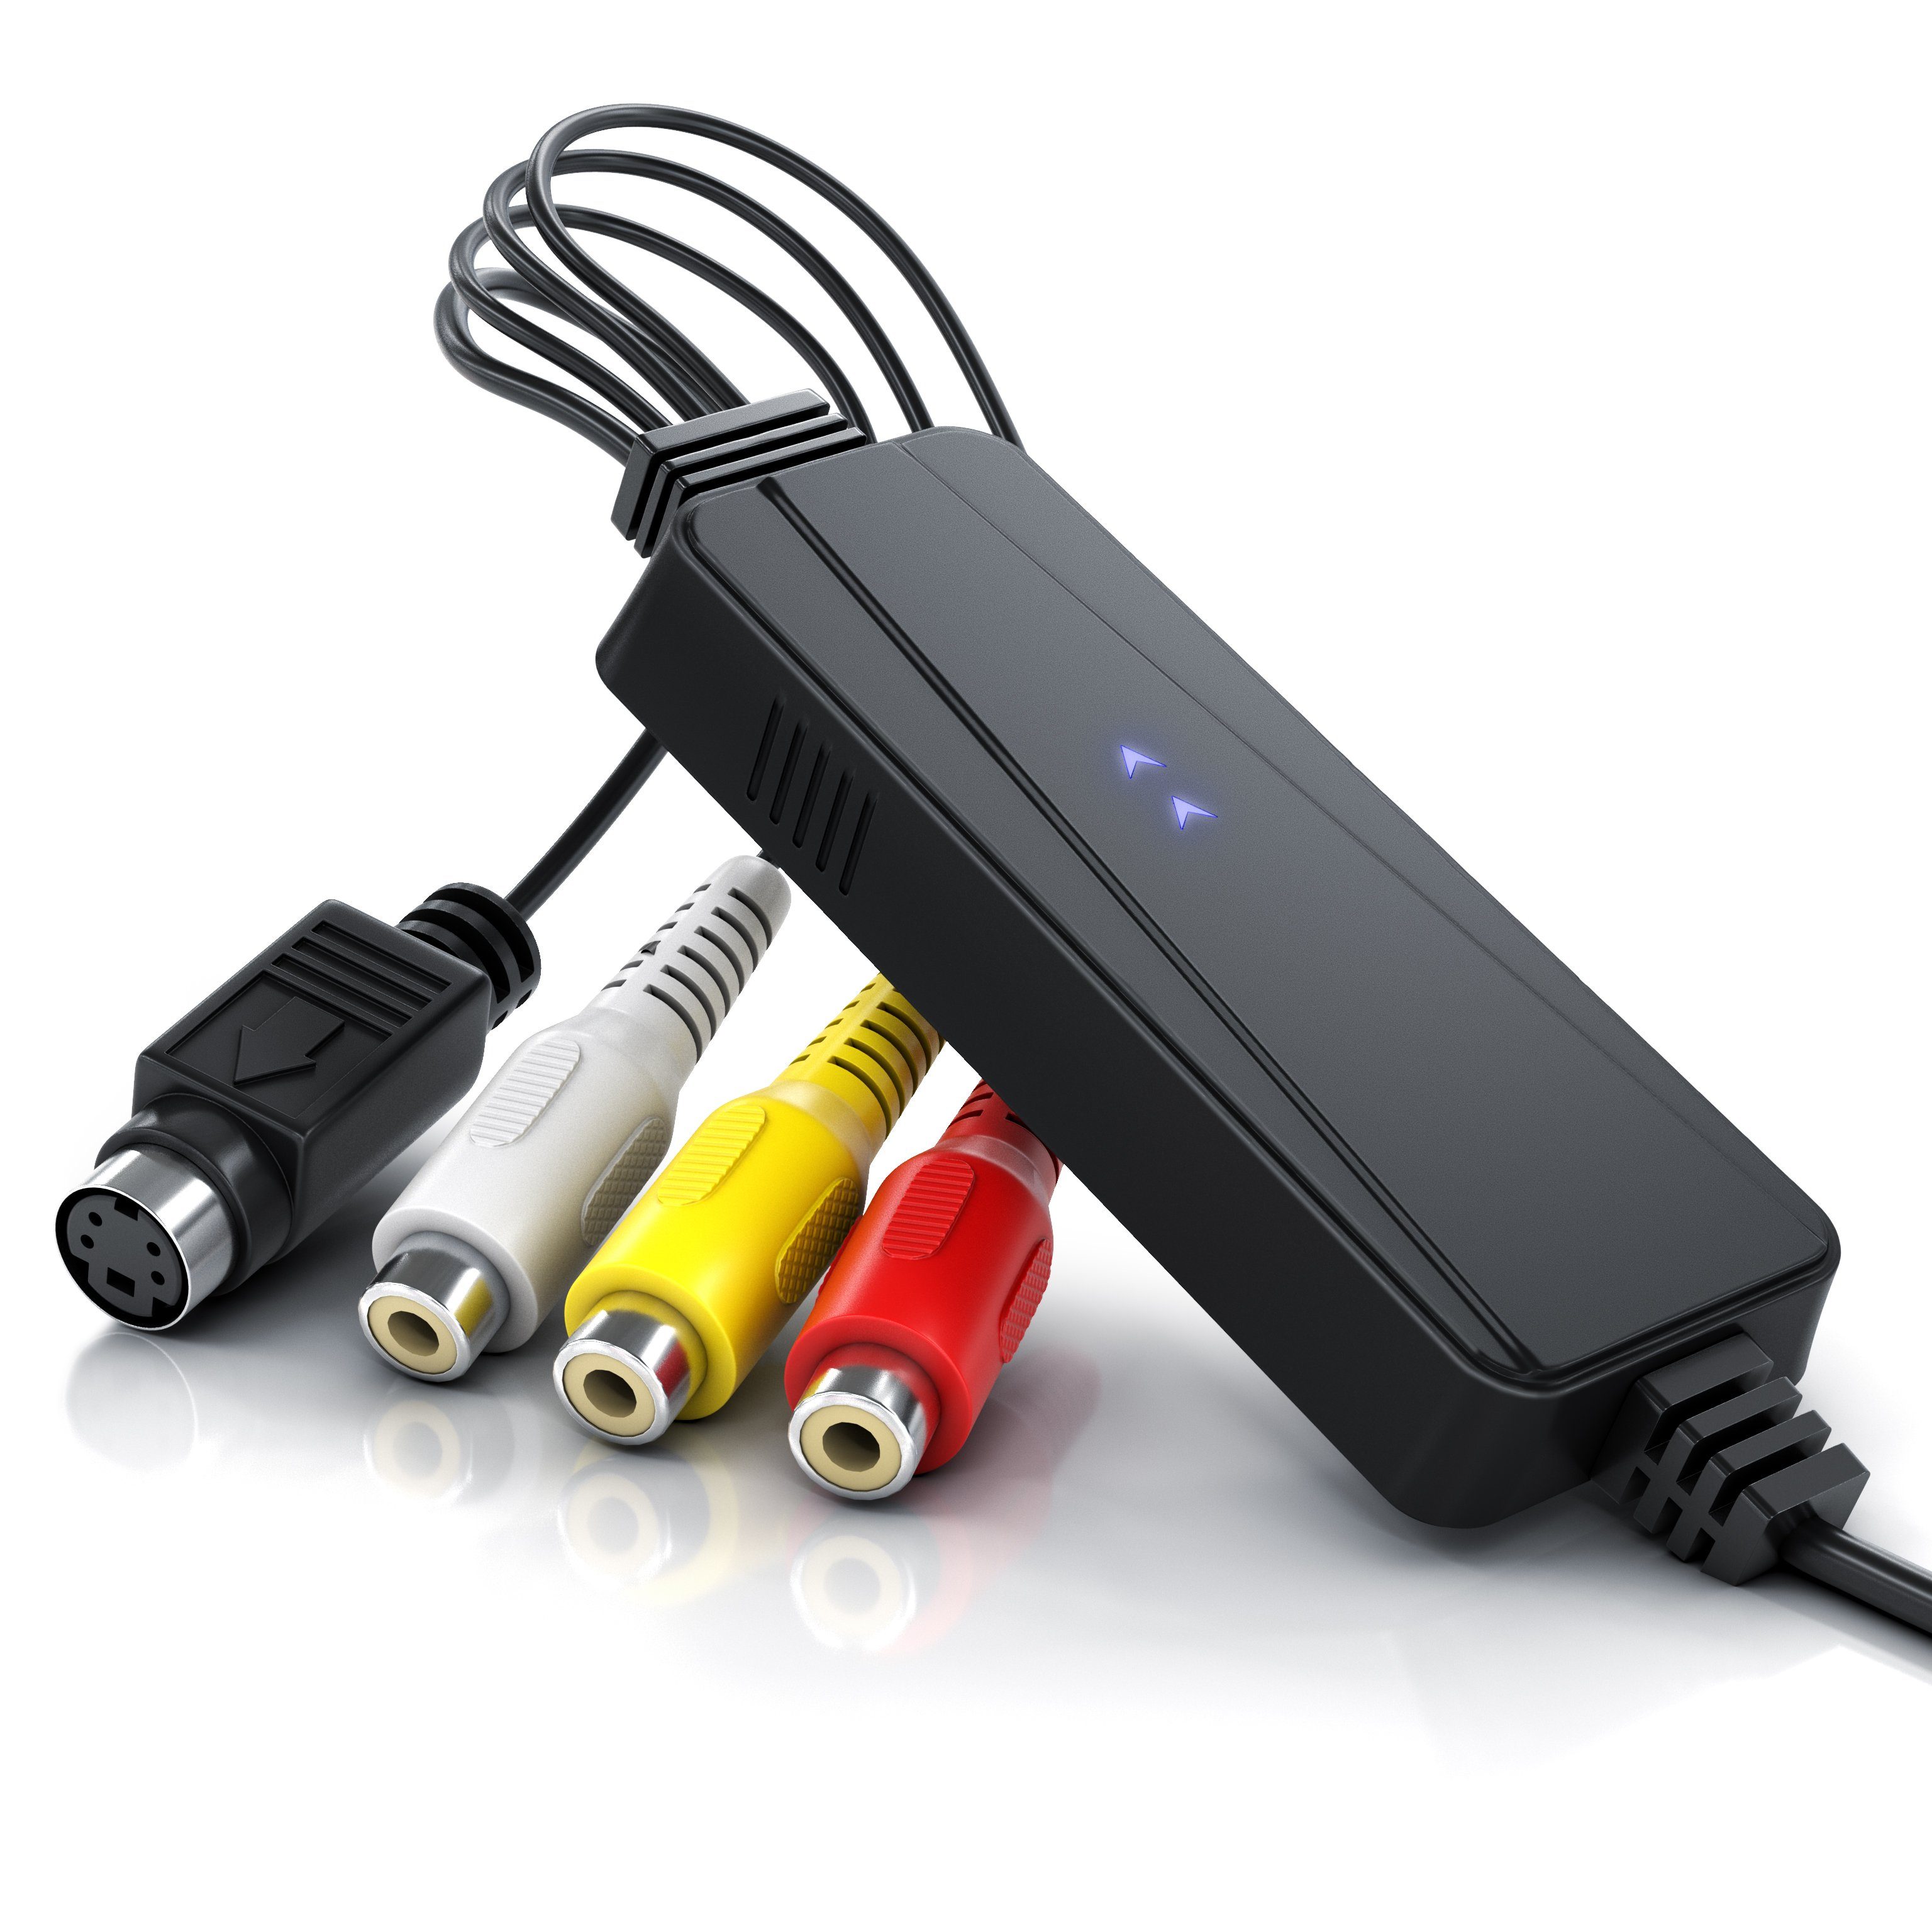 Aplic Audio- & Video-Adapter USB Typ A, S-Video, Composite CVBS, Cinch zu  USB 2.0 Typ A Stecker, S-Video Buchse (Mini-DIN 4), Composite CVBS Buchse,  Cinch Buchse, Cinch Buchse, USB High Speed Videograbber -